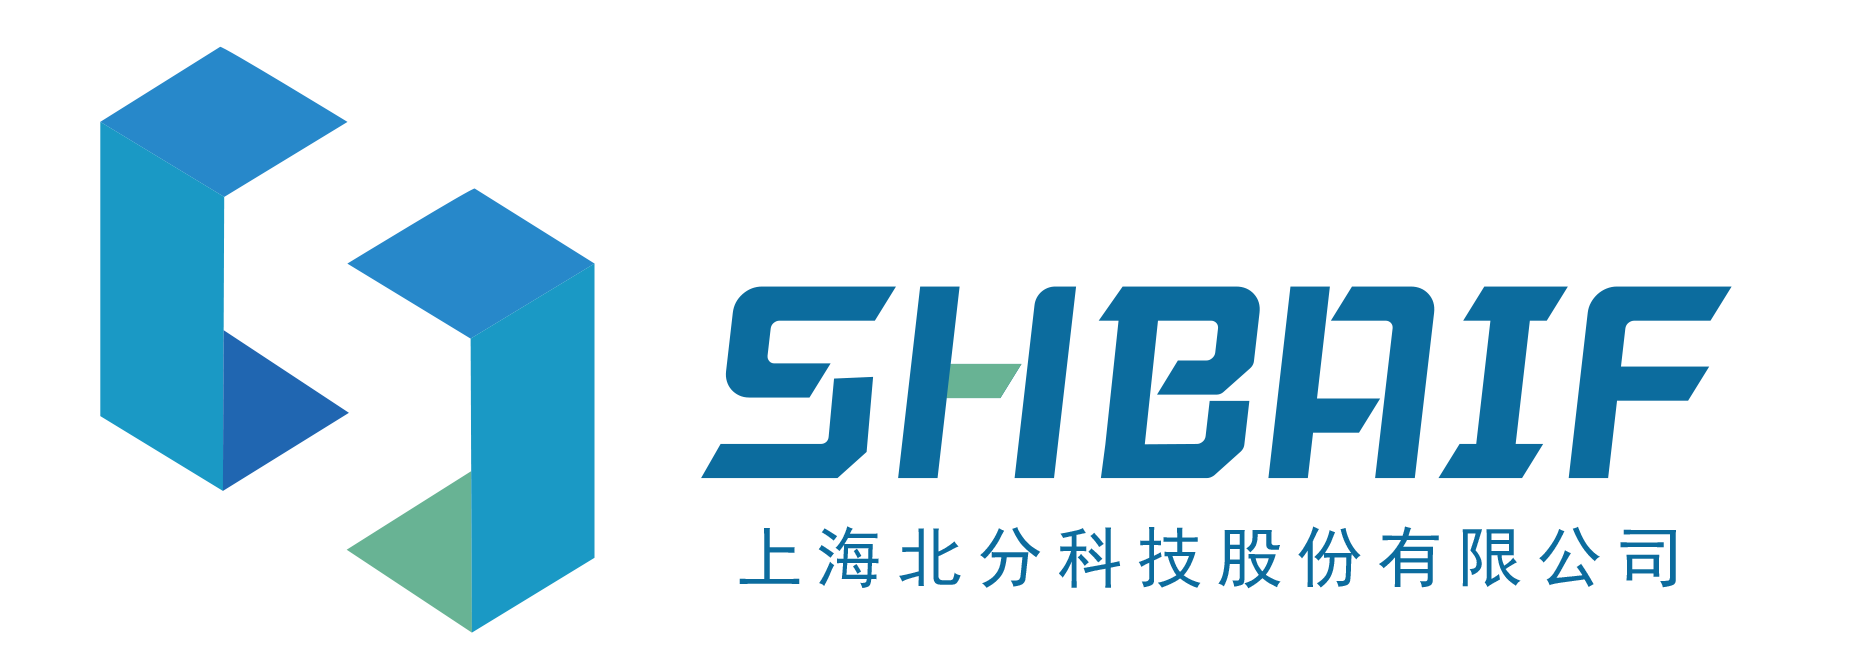 上海北分科技股份有限公司